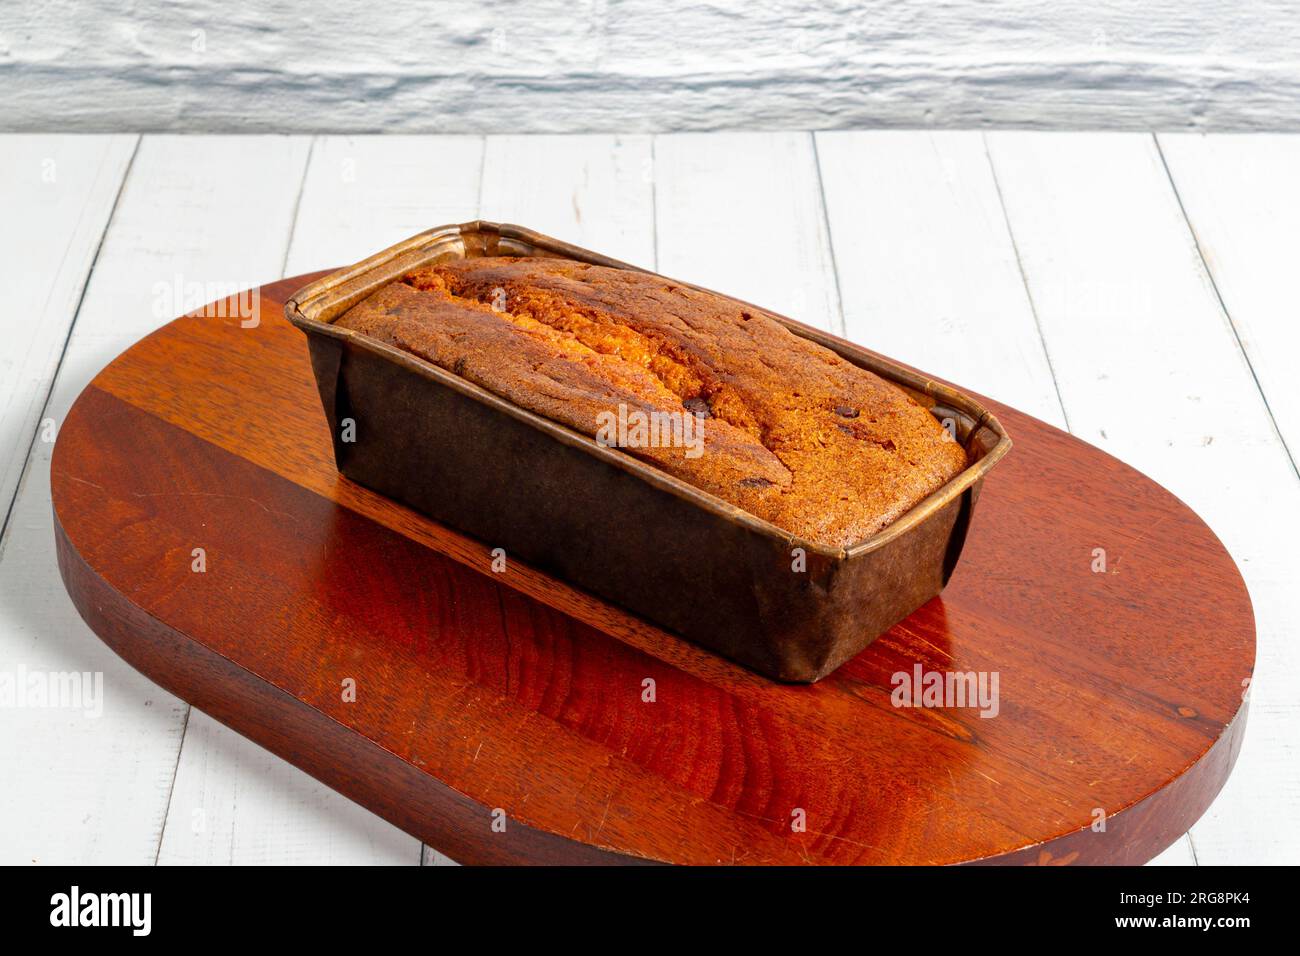 Un gâteau anglais dans un plat allant au four sur une planche de bois et une table en bois blanc. Mise au point sélective Banque D'Images